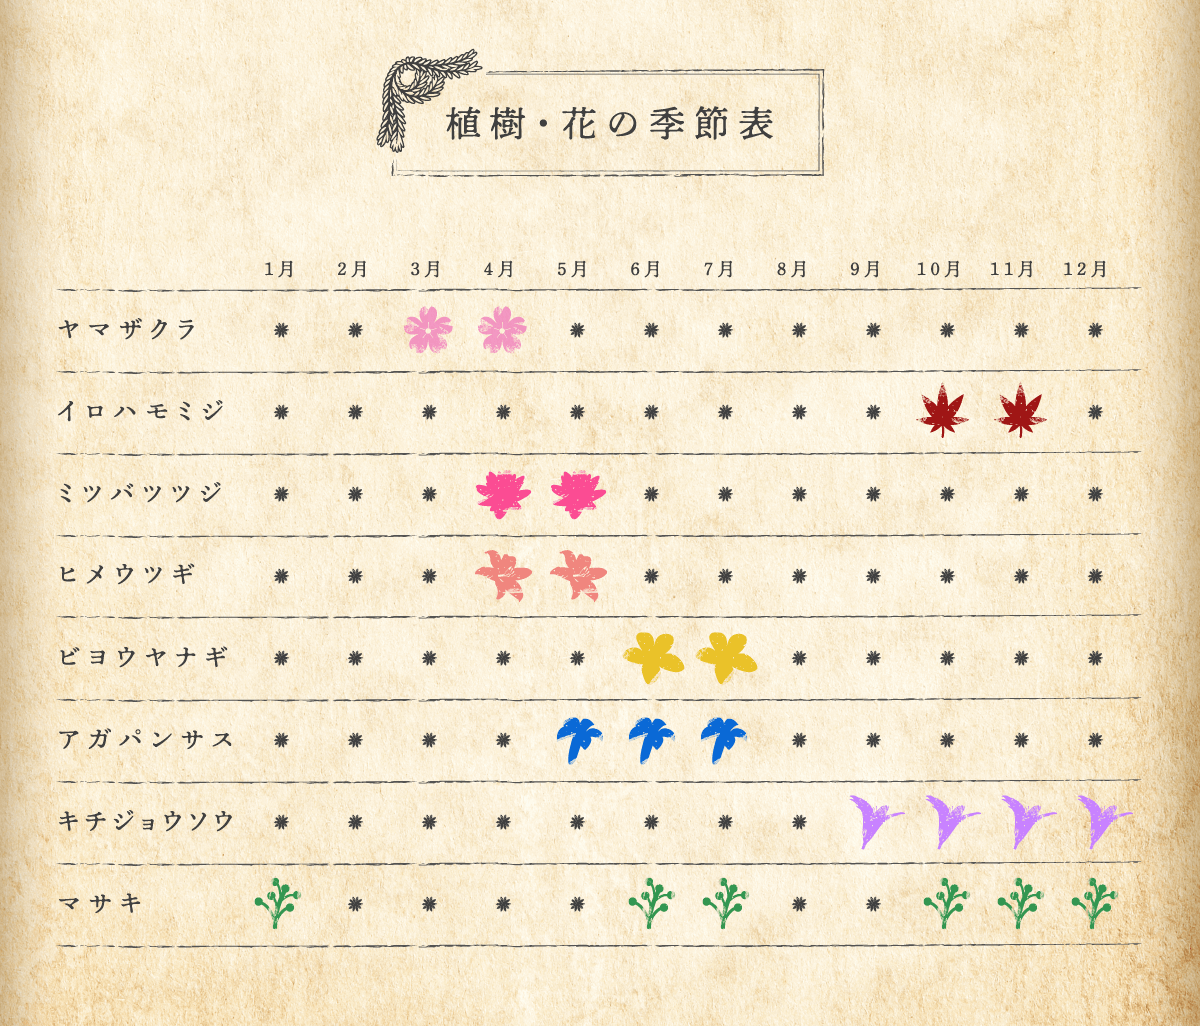 植樹・花の季節表